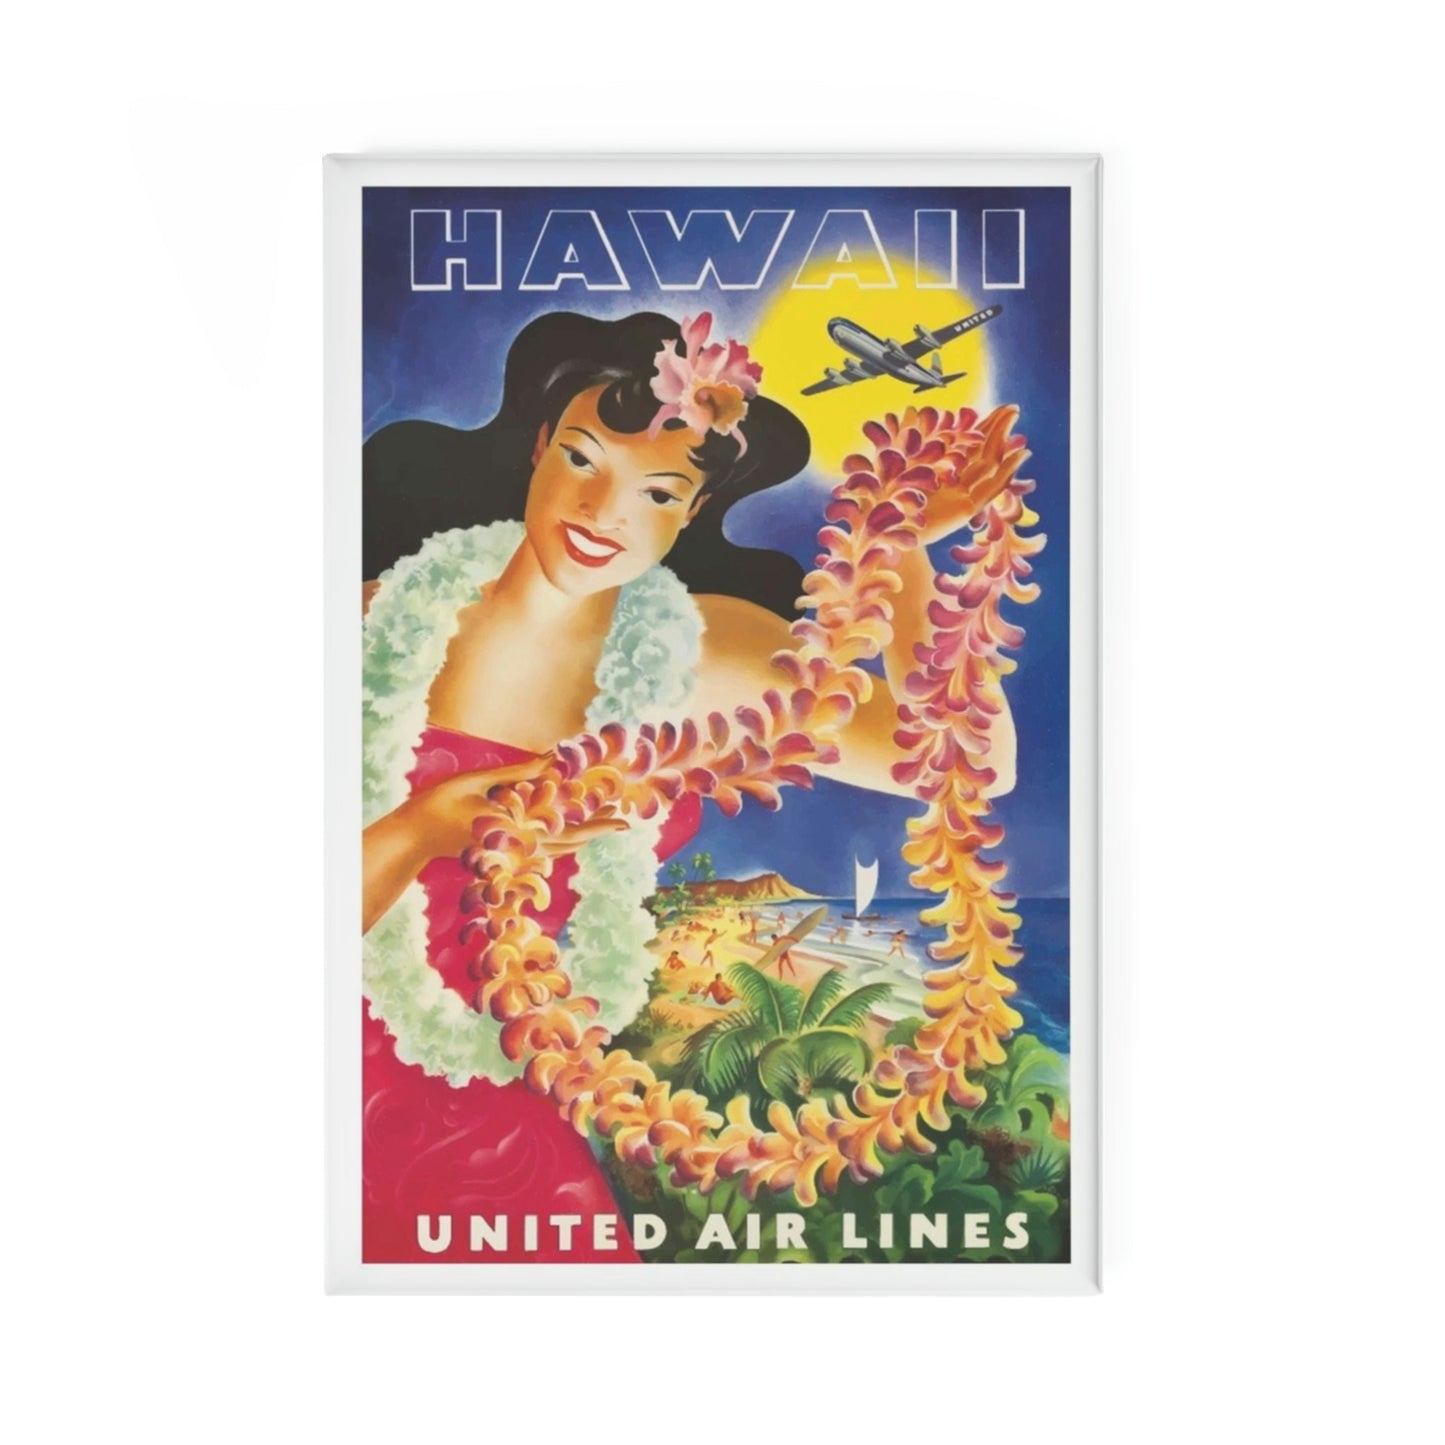 Hawaii UAL Magnet